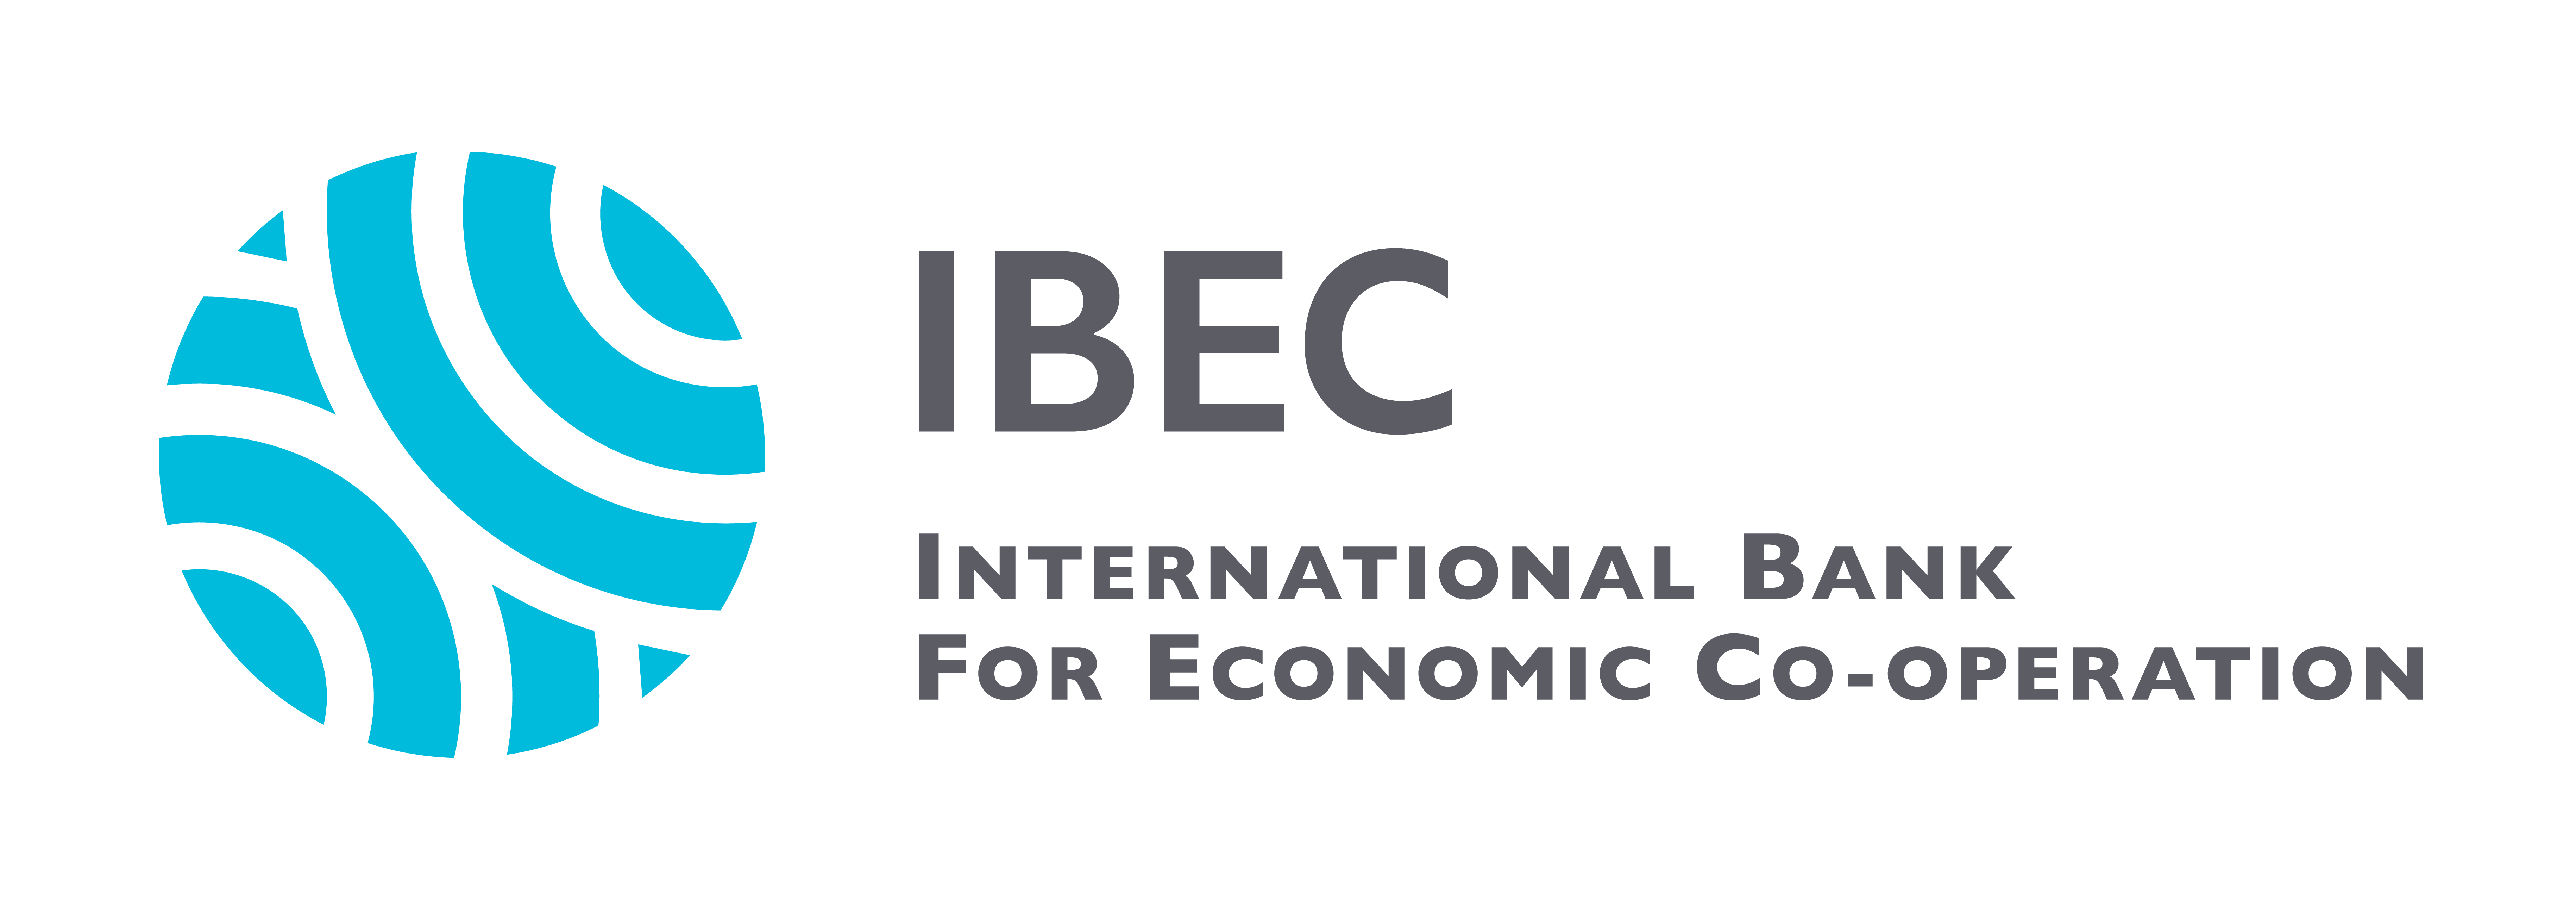 Международный экономический банк. Международный банк экономического сотрудничества Маши Порываевой. МБЭС логотип. Международный банк экономического сотрудничества логотип. IBEC банк.